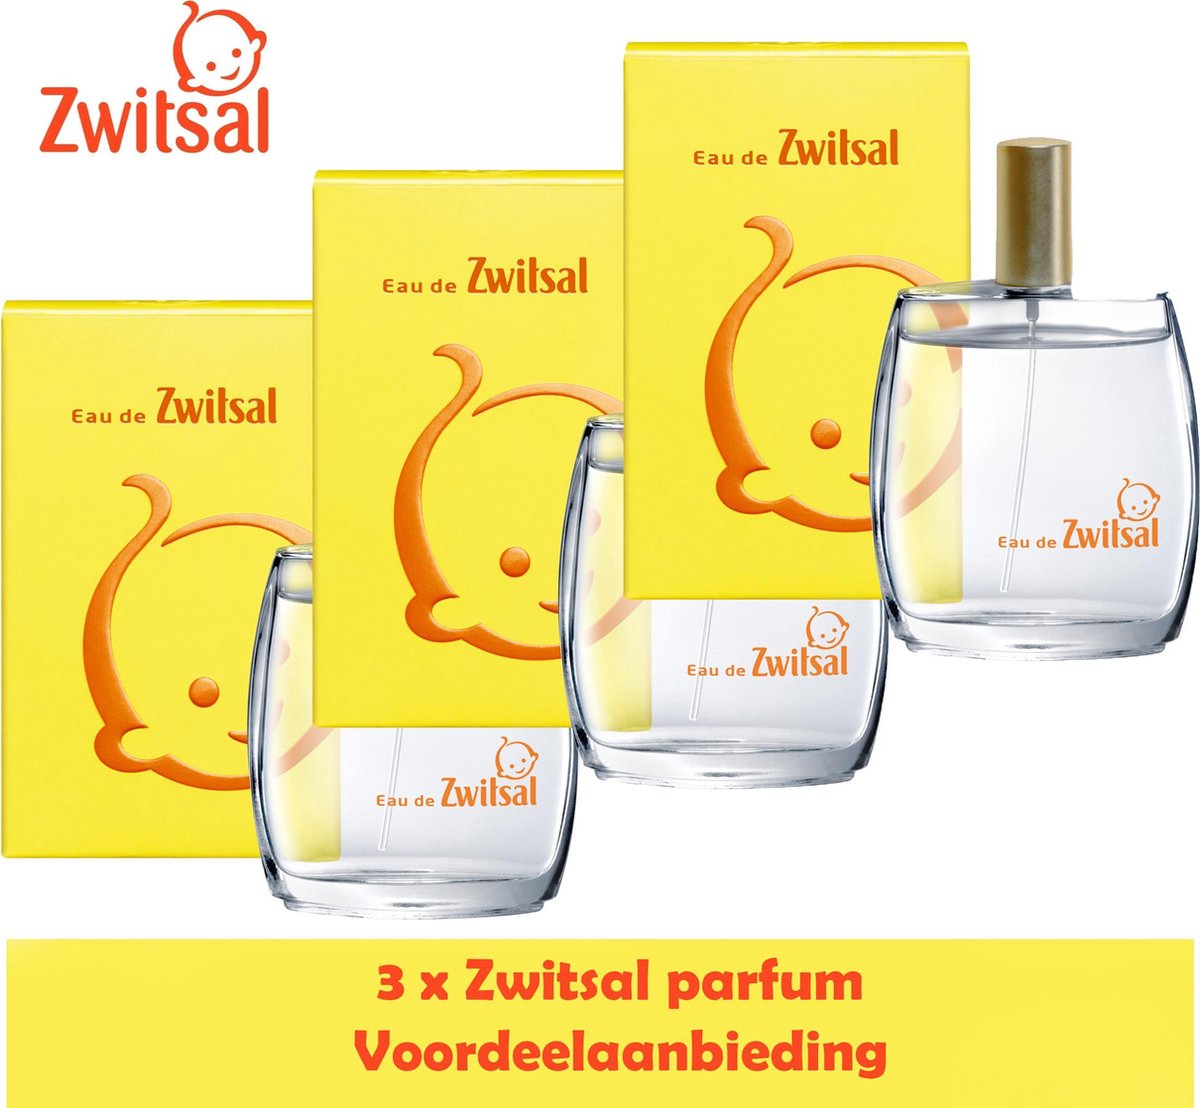 Madison halfrond Shilling Zwitsal Parfum Eau de Zwitsal 3 stuks Voordeelverpakking | bol.com